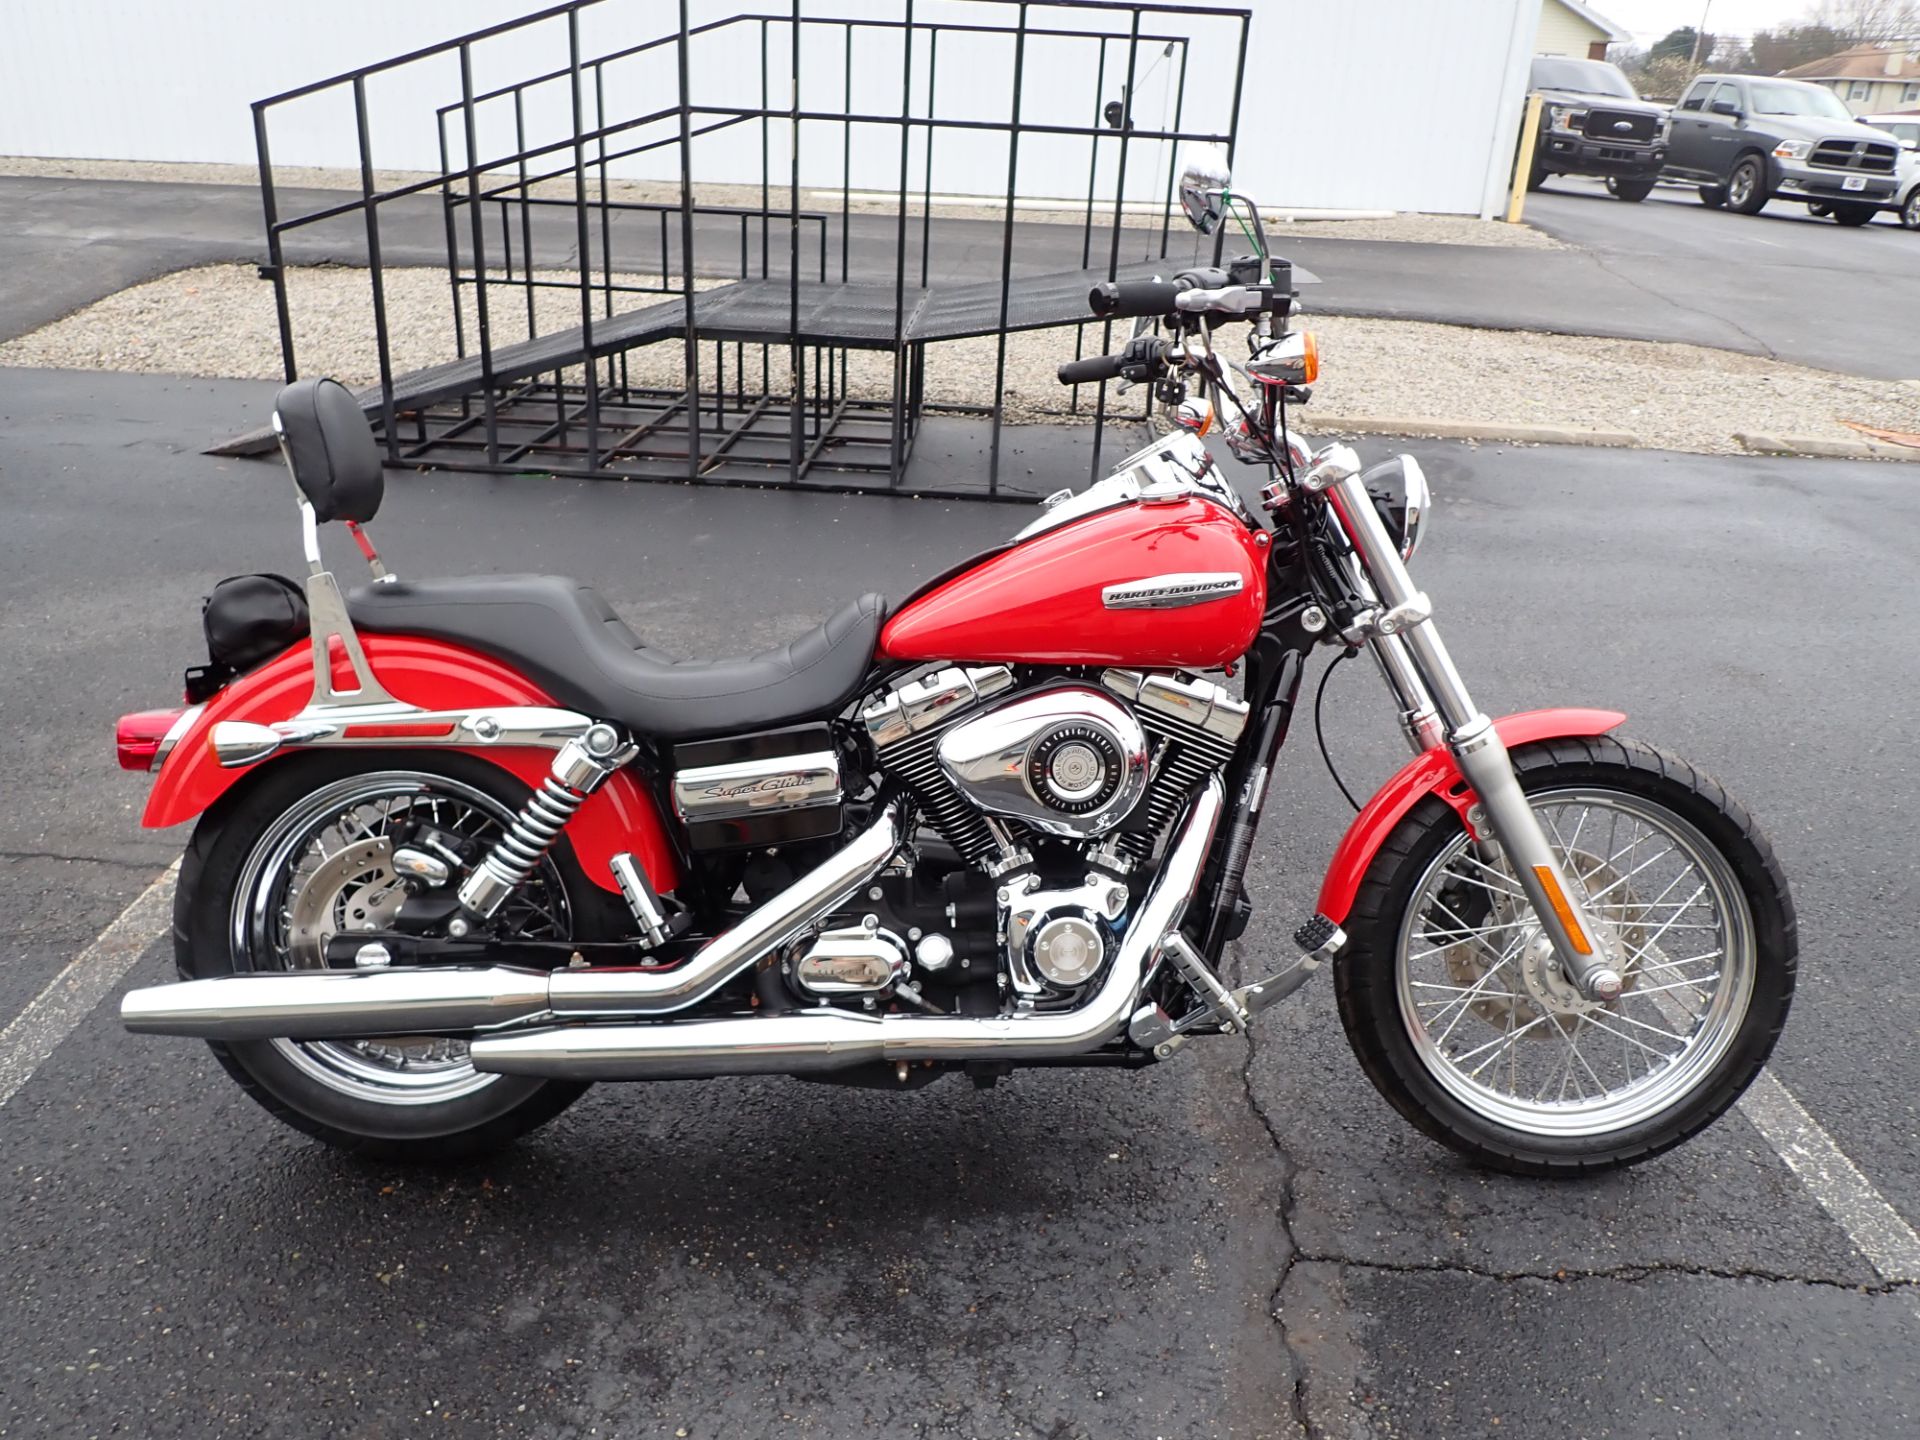 2010 Harley-Davidson Dyna® Super Glide® Custom in Massillon, Ohio - Photo 1